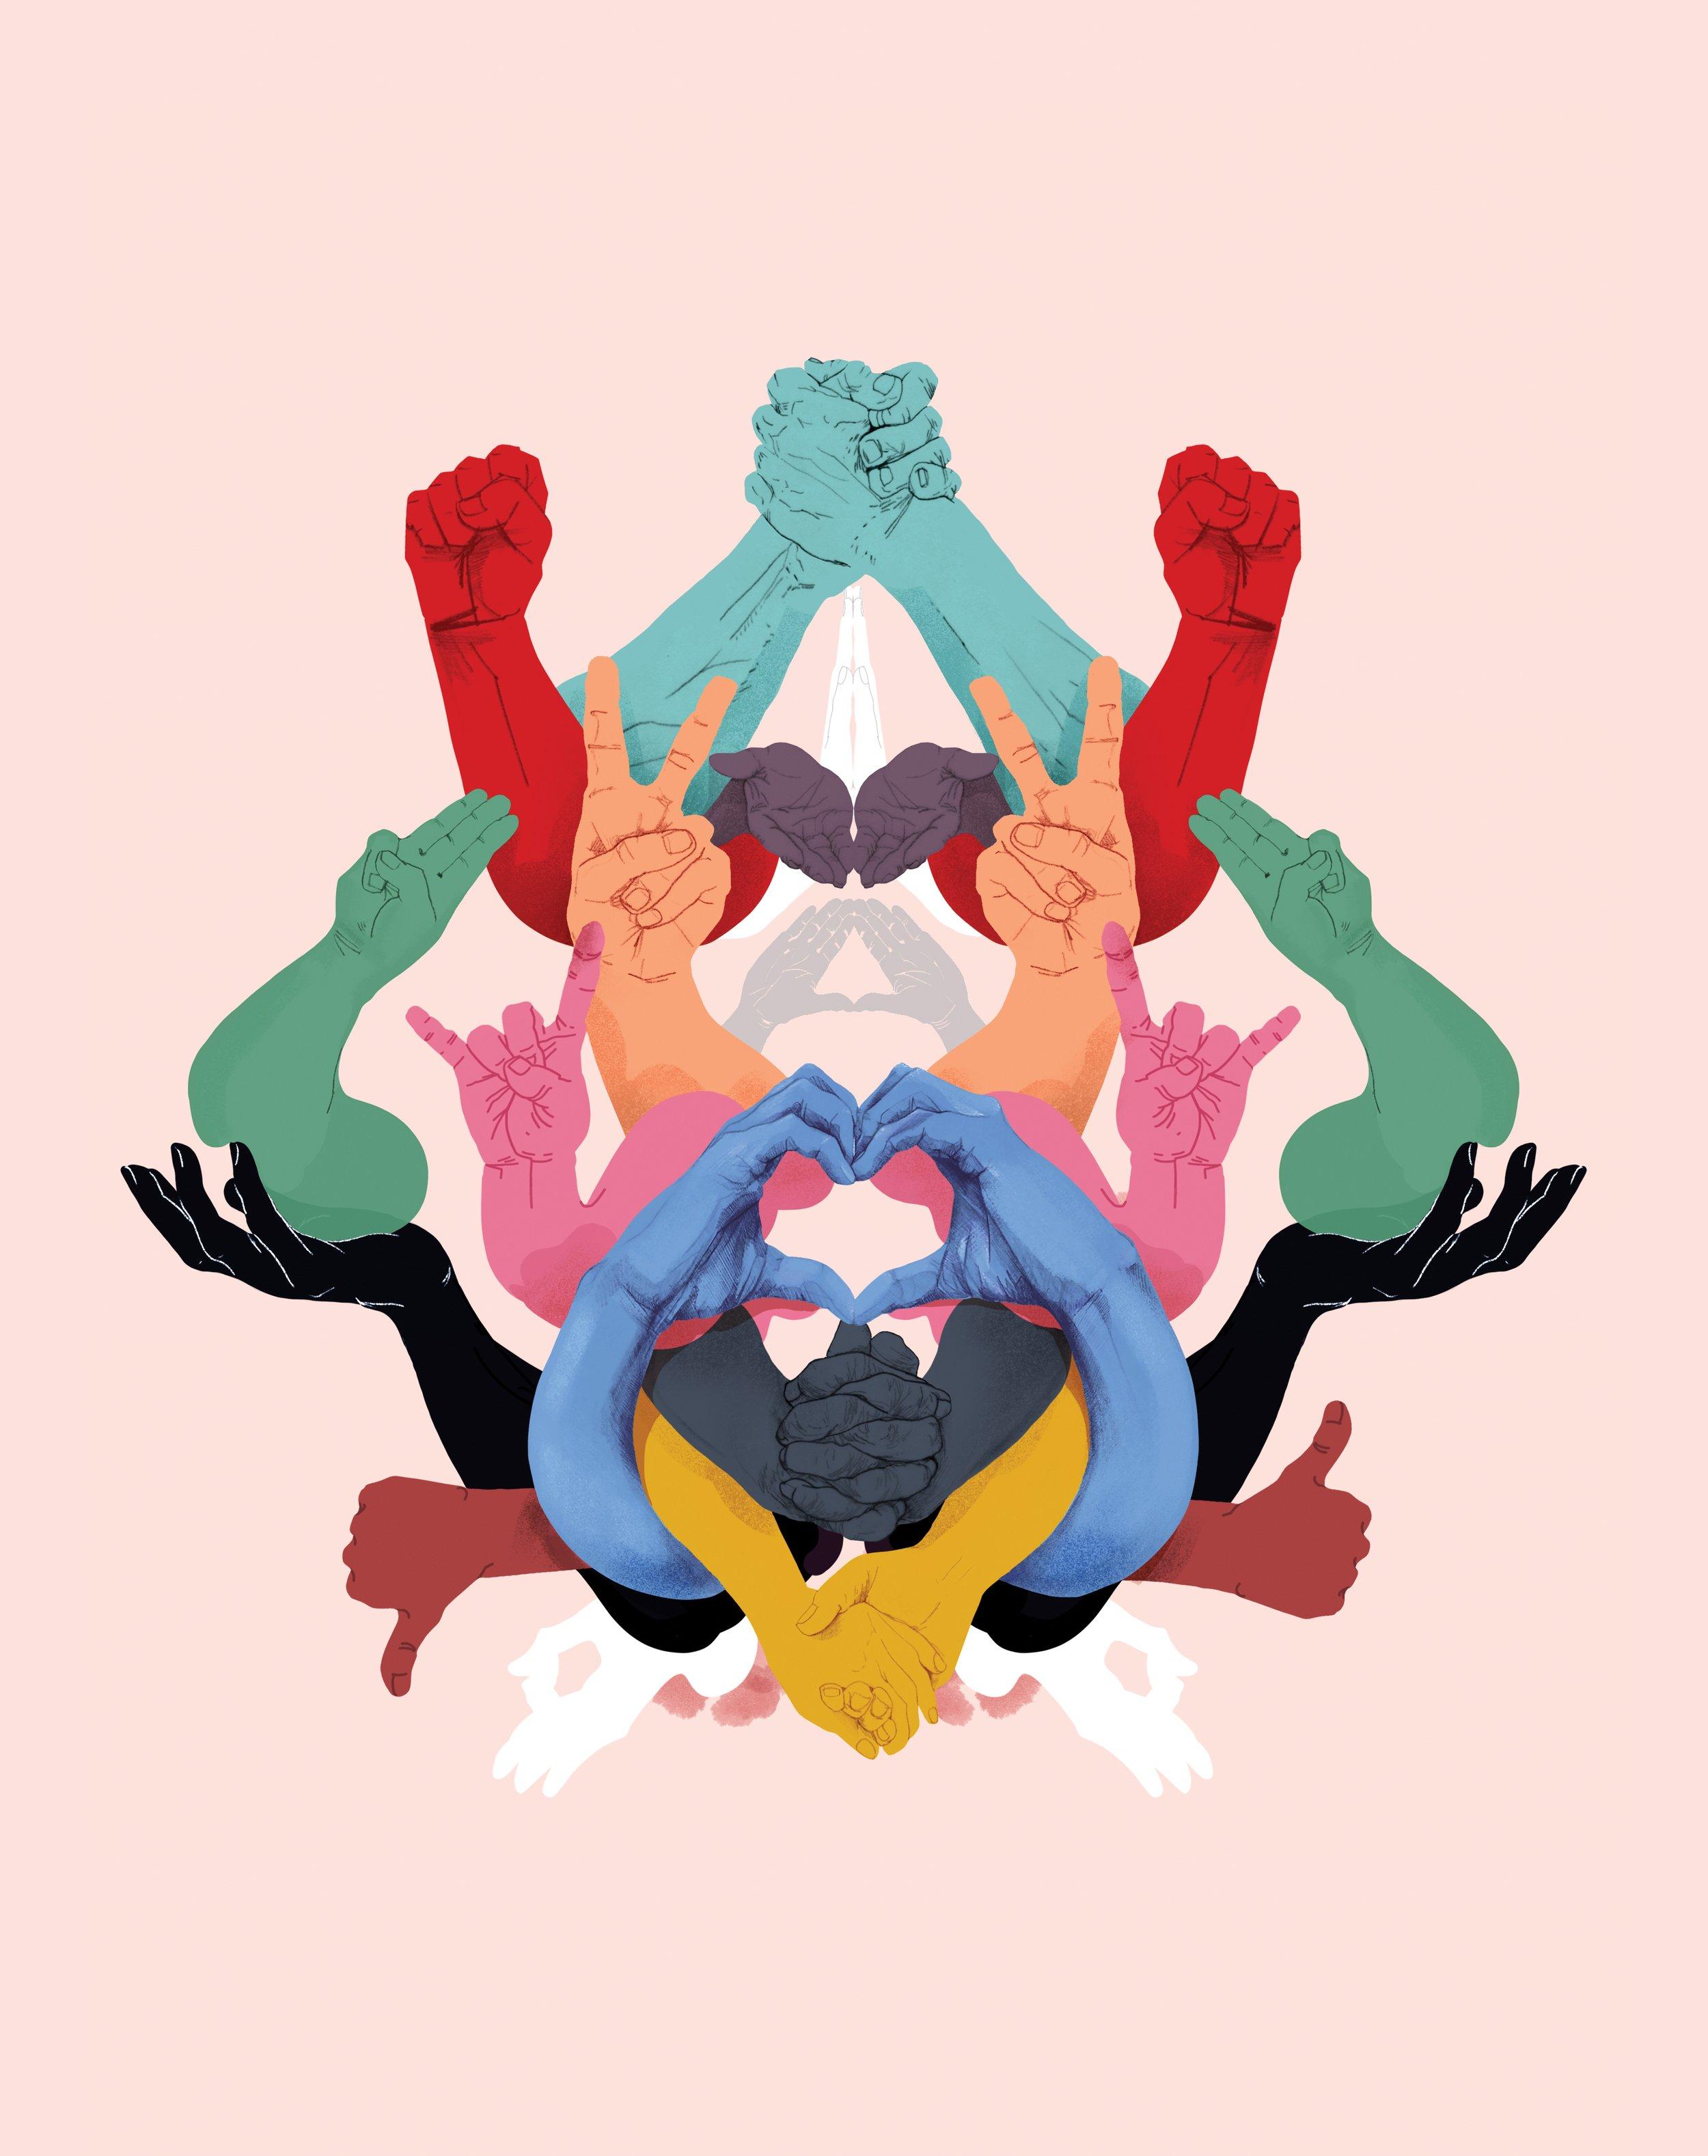 Bilde av trykket Fellesskapene. Tegning av hender og armer i ulike farger som glir inn i hverandre og viser ulike håndtegn som hjerte, fredstegn og foldede hender.